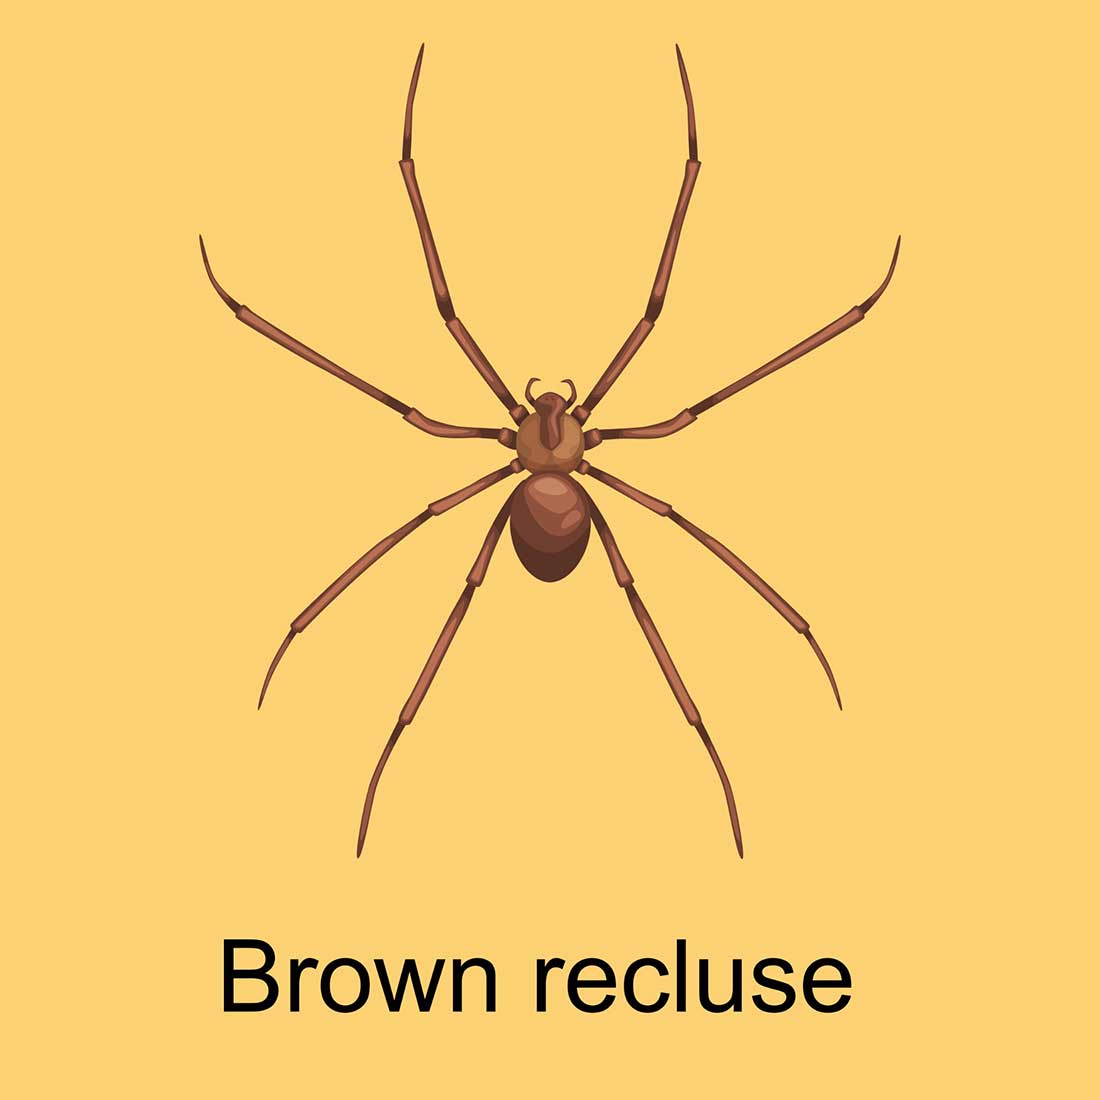 L'araignée recluse brune (Loxosceles rufescens)